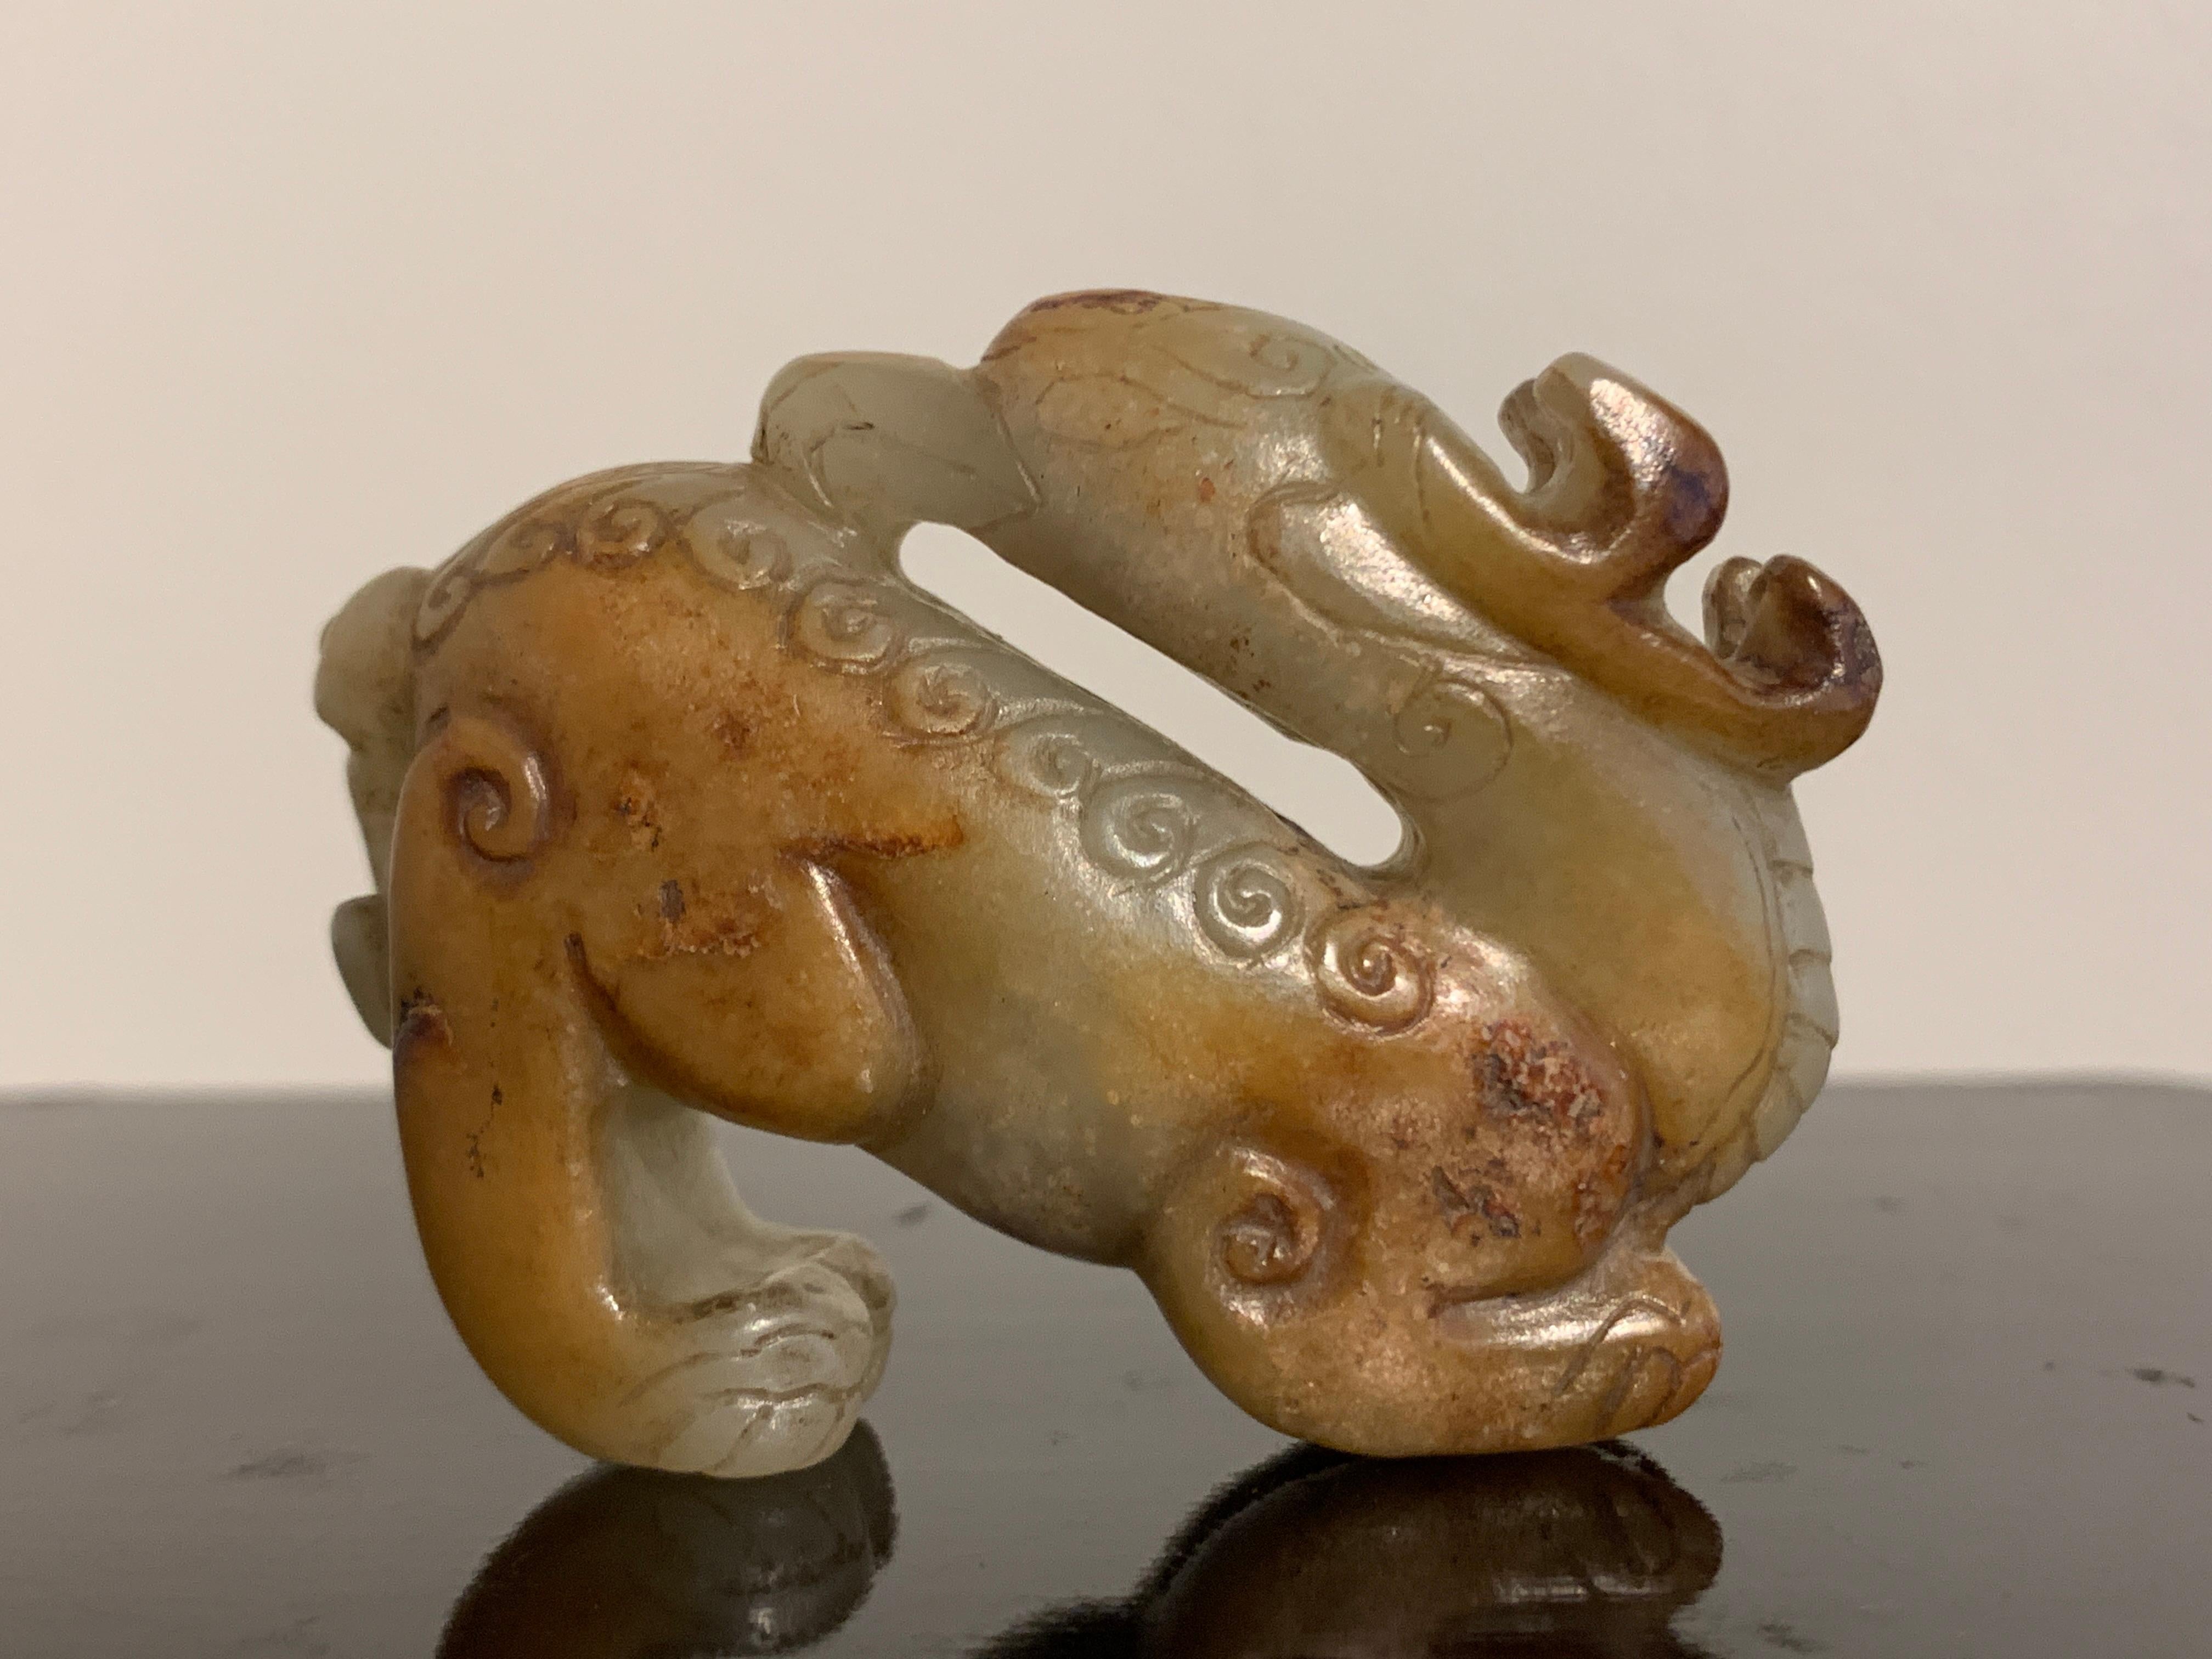 Eine schöne und ungewöhnliche Schnitzerei eines mythischen Tieres, möglicherweise ein Pixiu, aus Seladon und rostroter Nephrit-Jade, Ming-Dynastie oder früher, China.

Das mythische Tier ist meisterhaft als Chimäre geschnitzt, mit einem